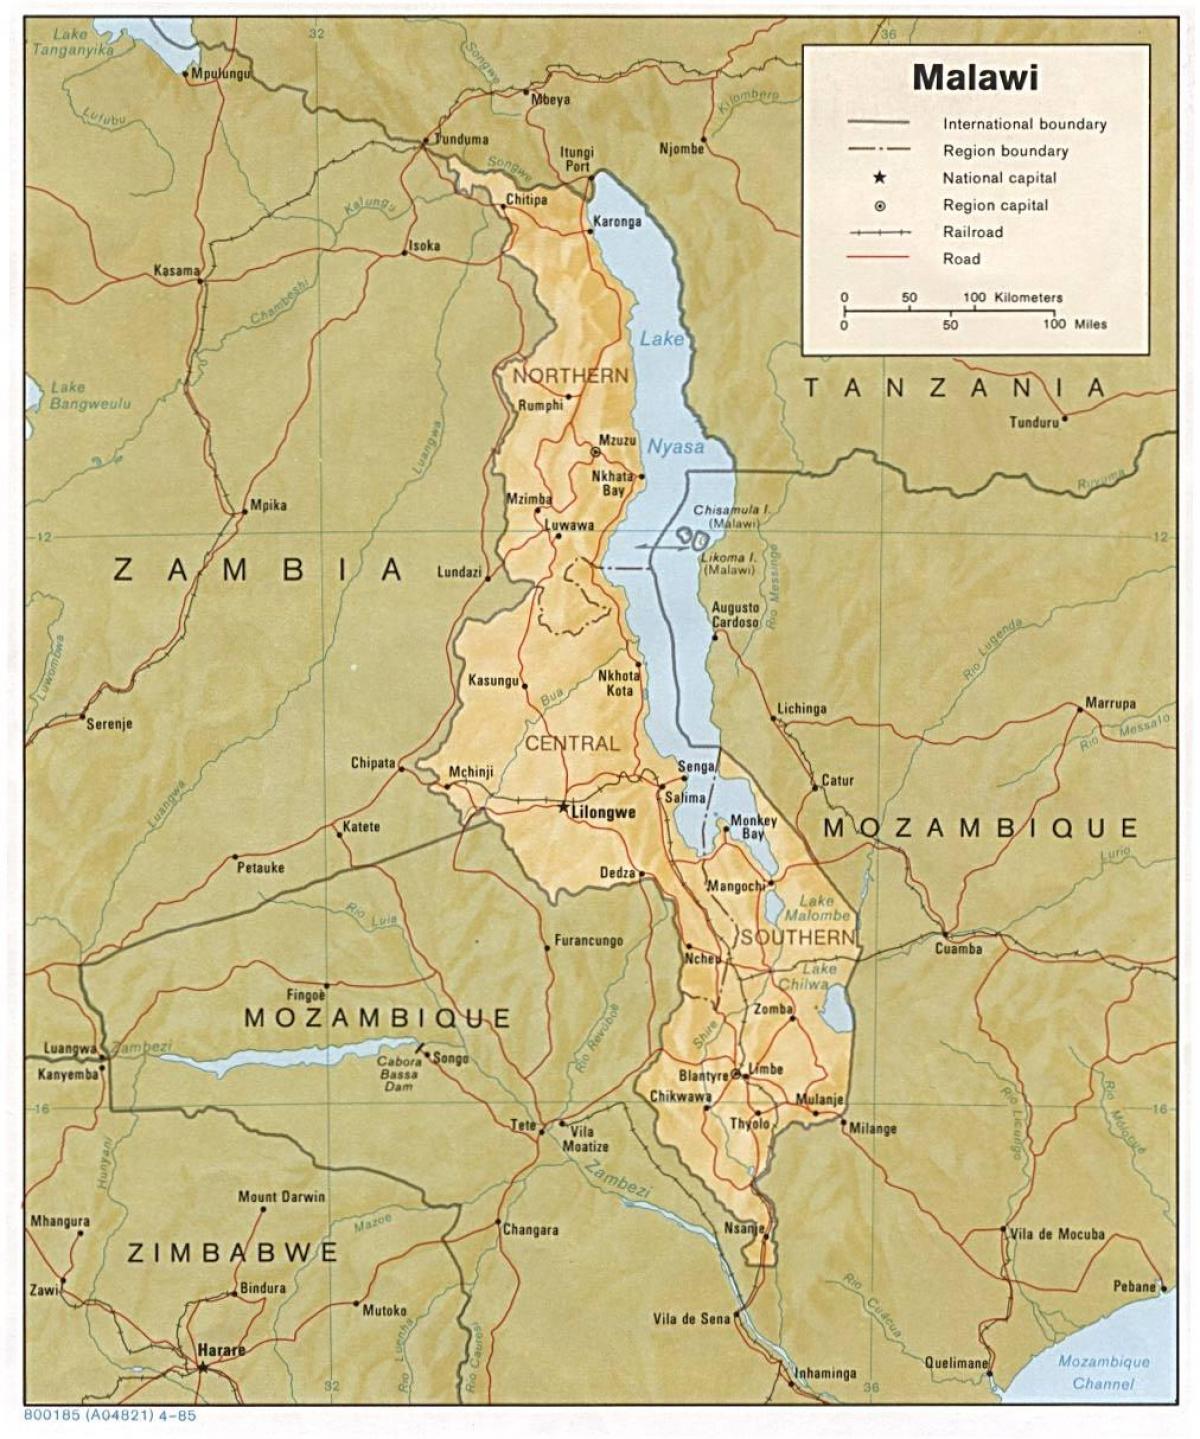 el lago Malawi en el mapa